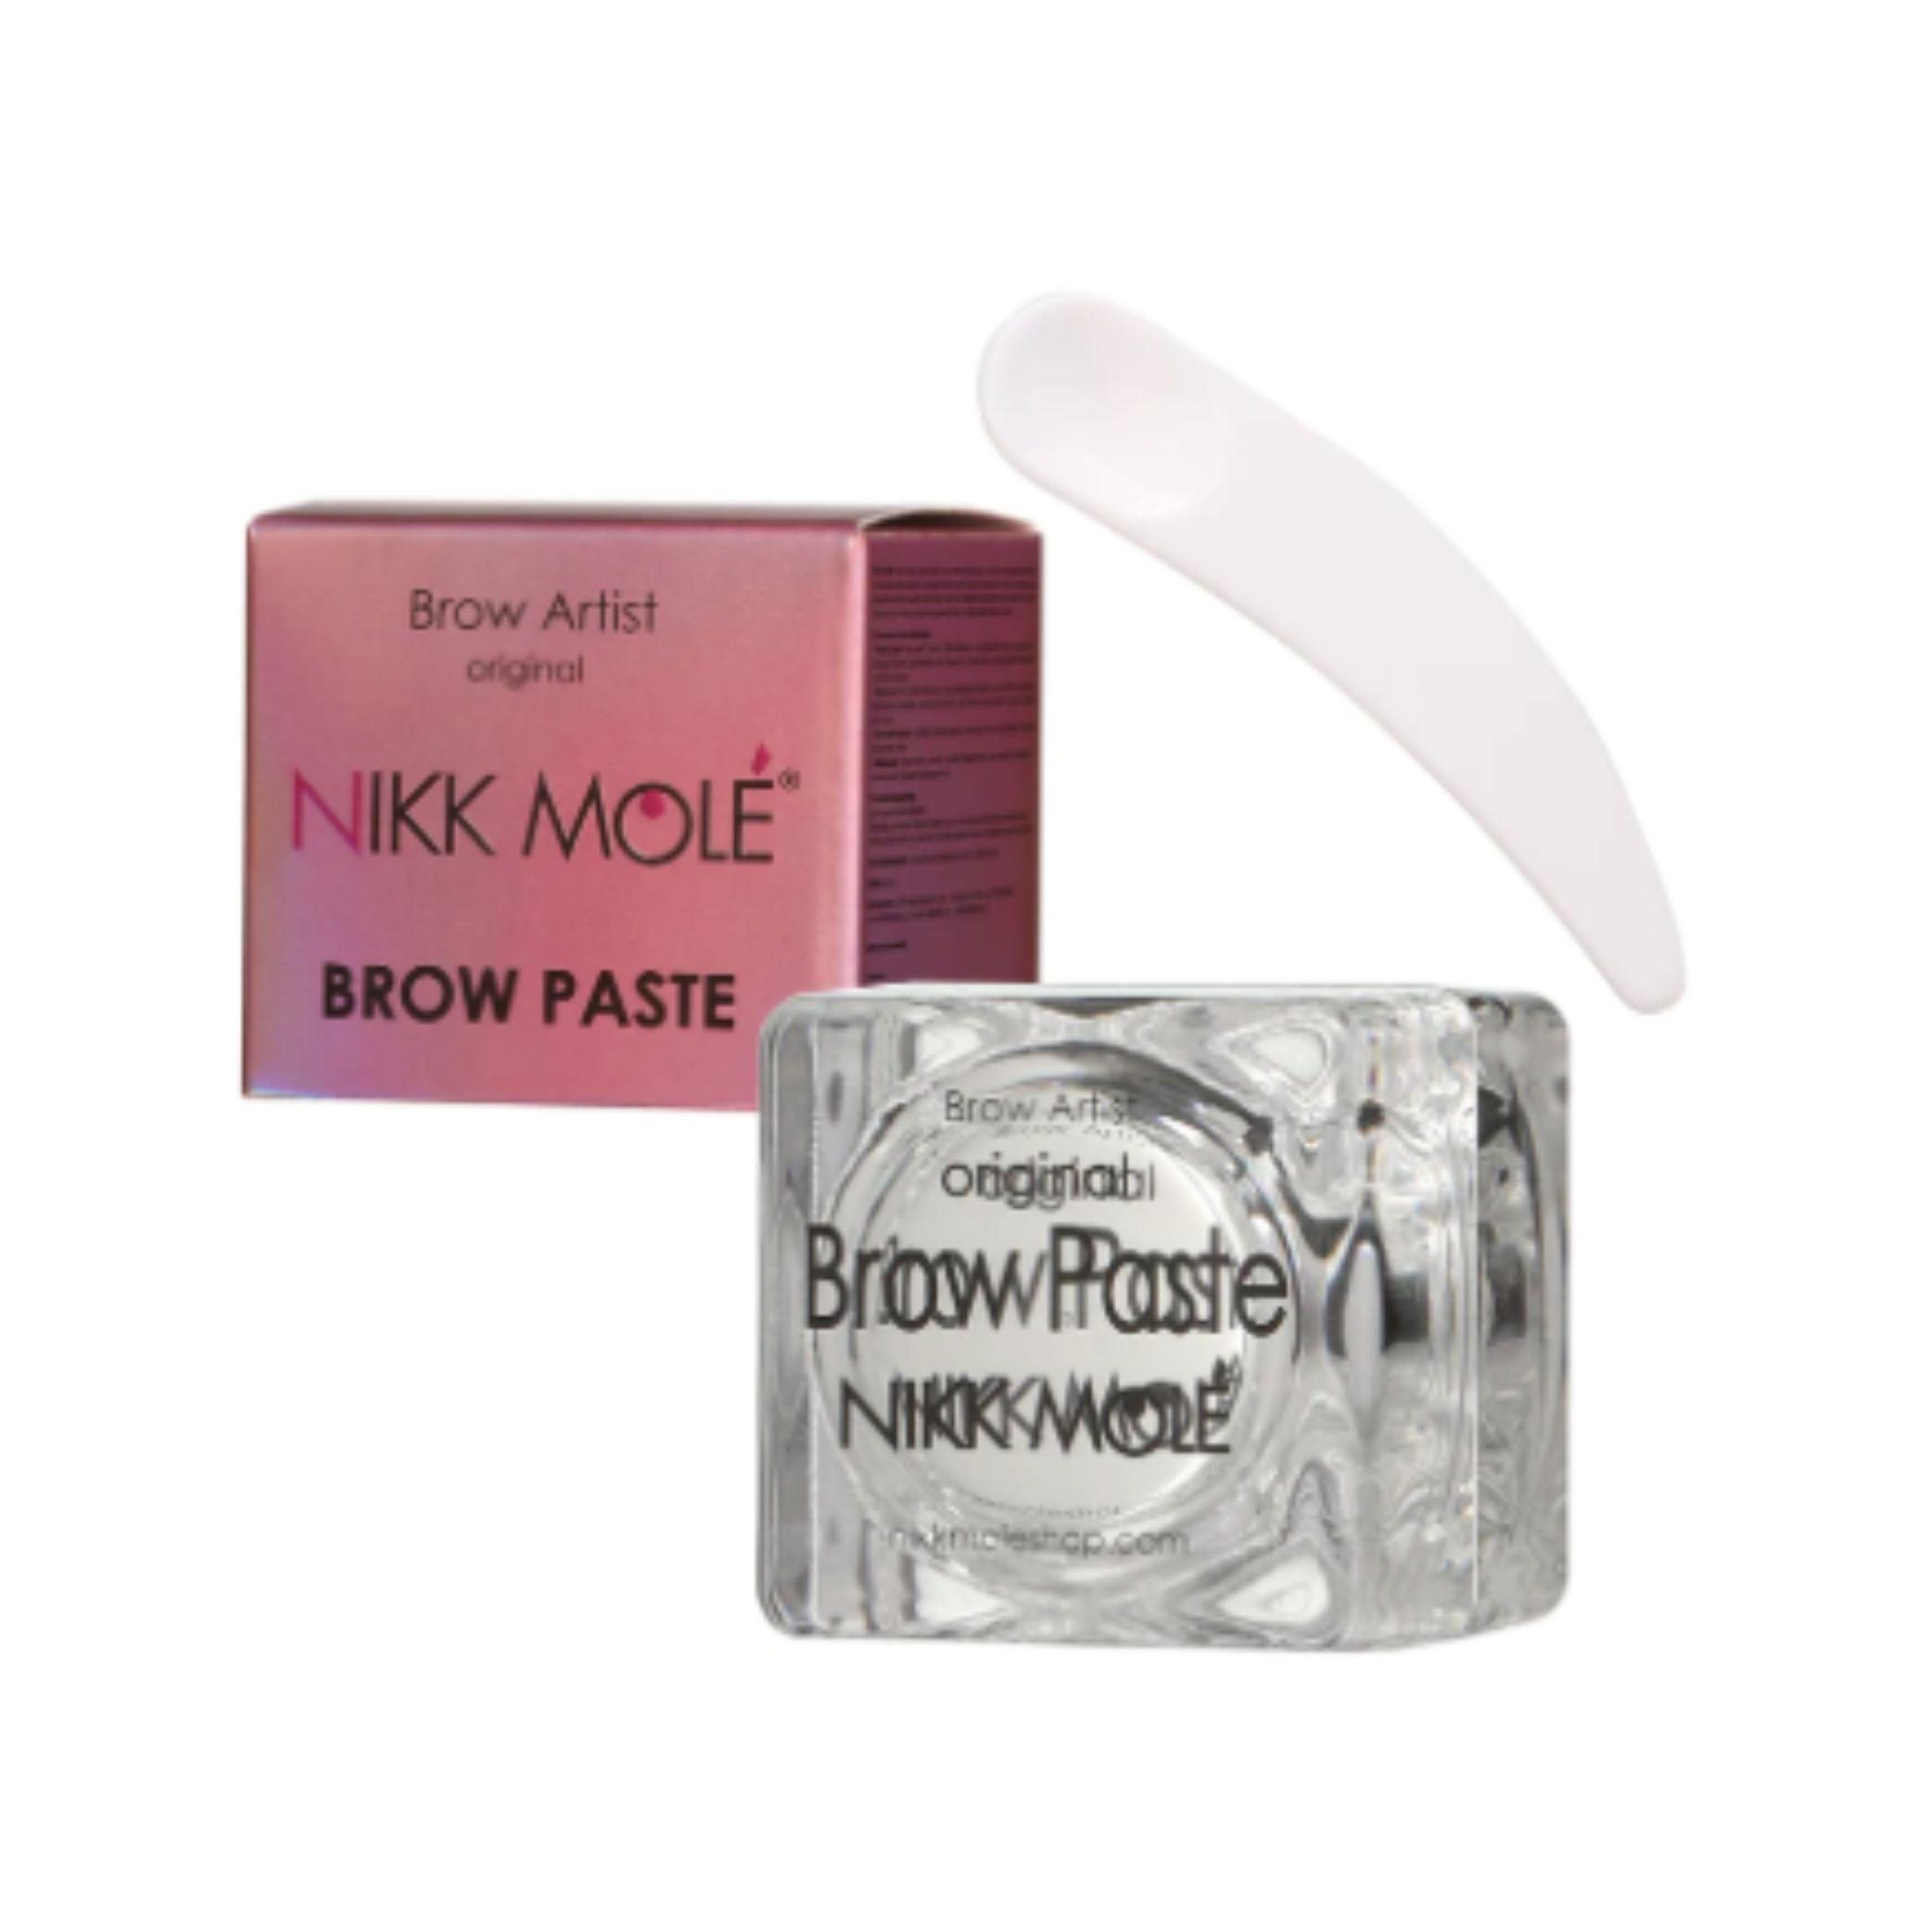 Nikk Mole Brow Paste - White